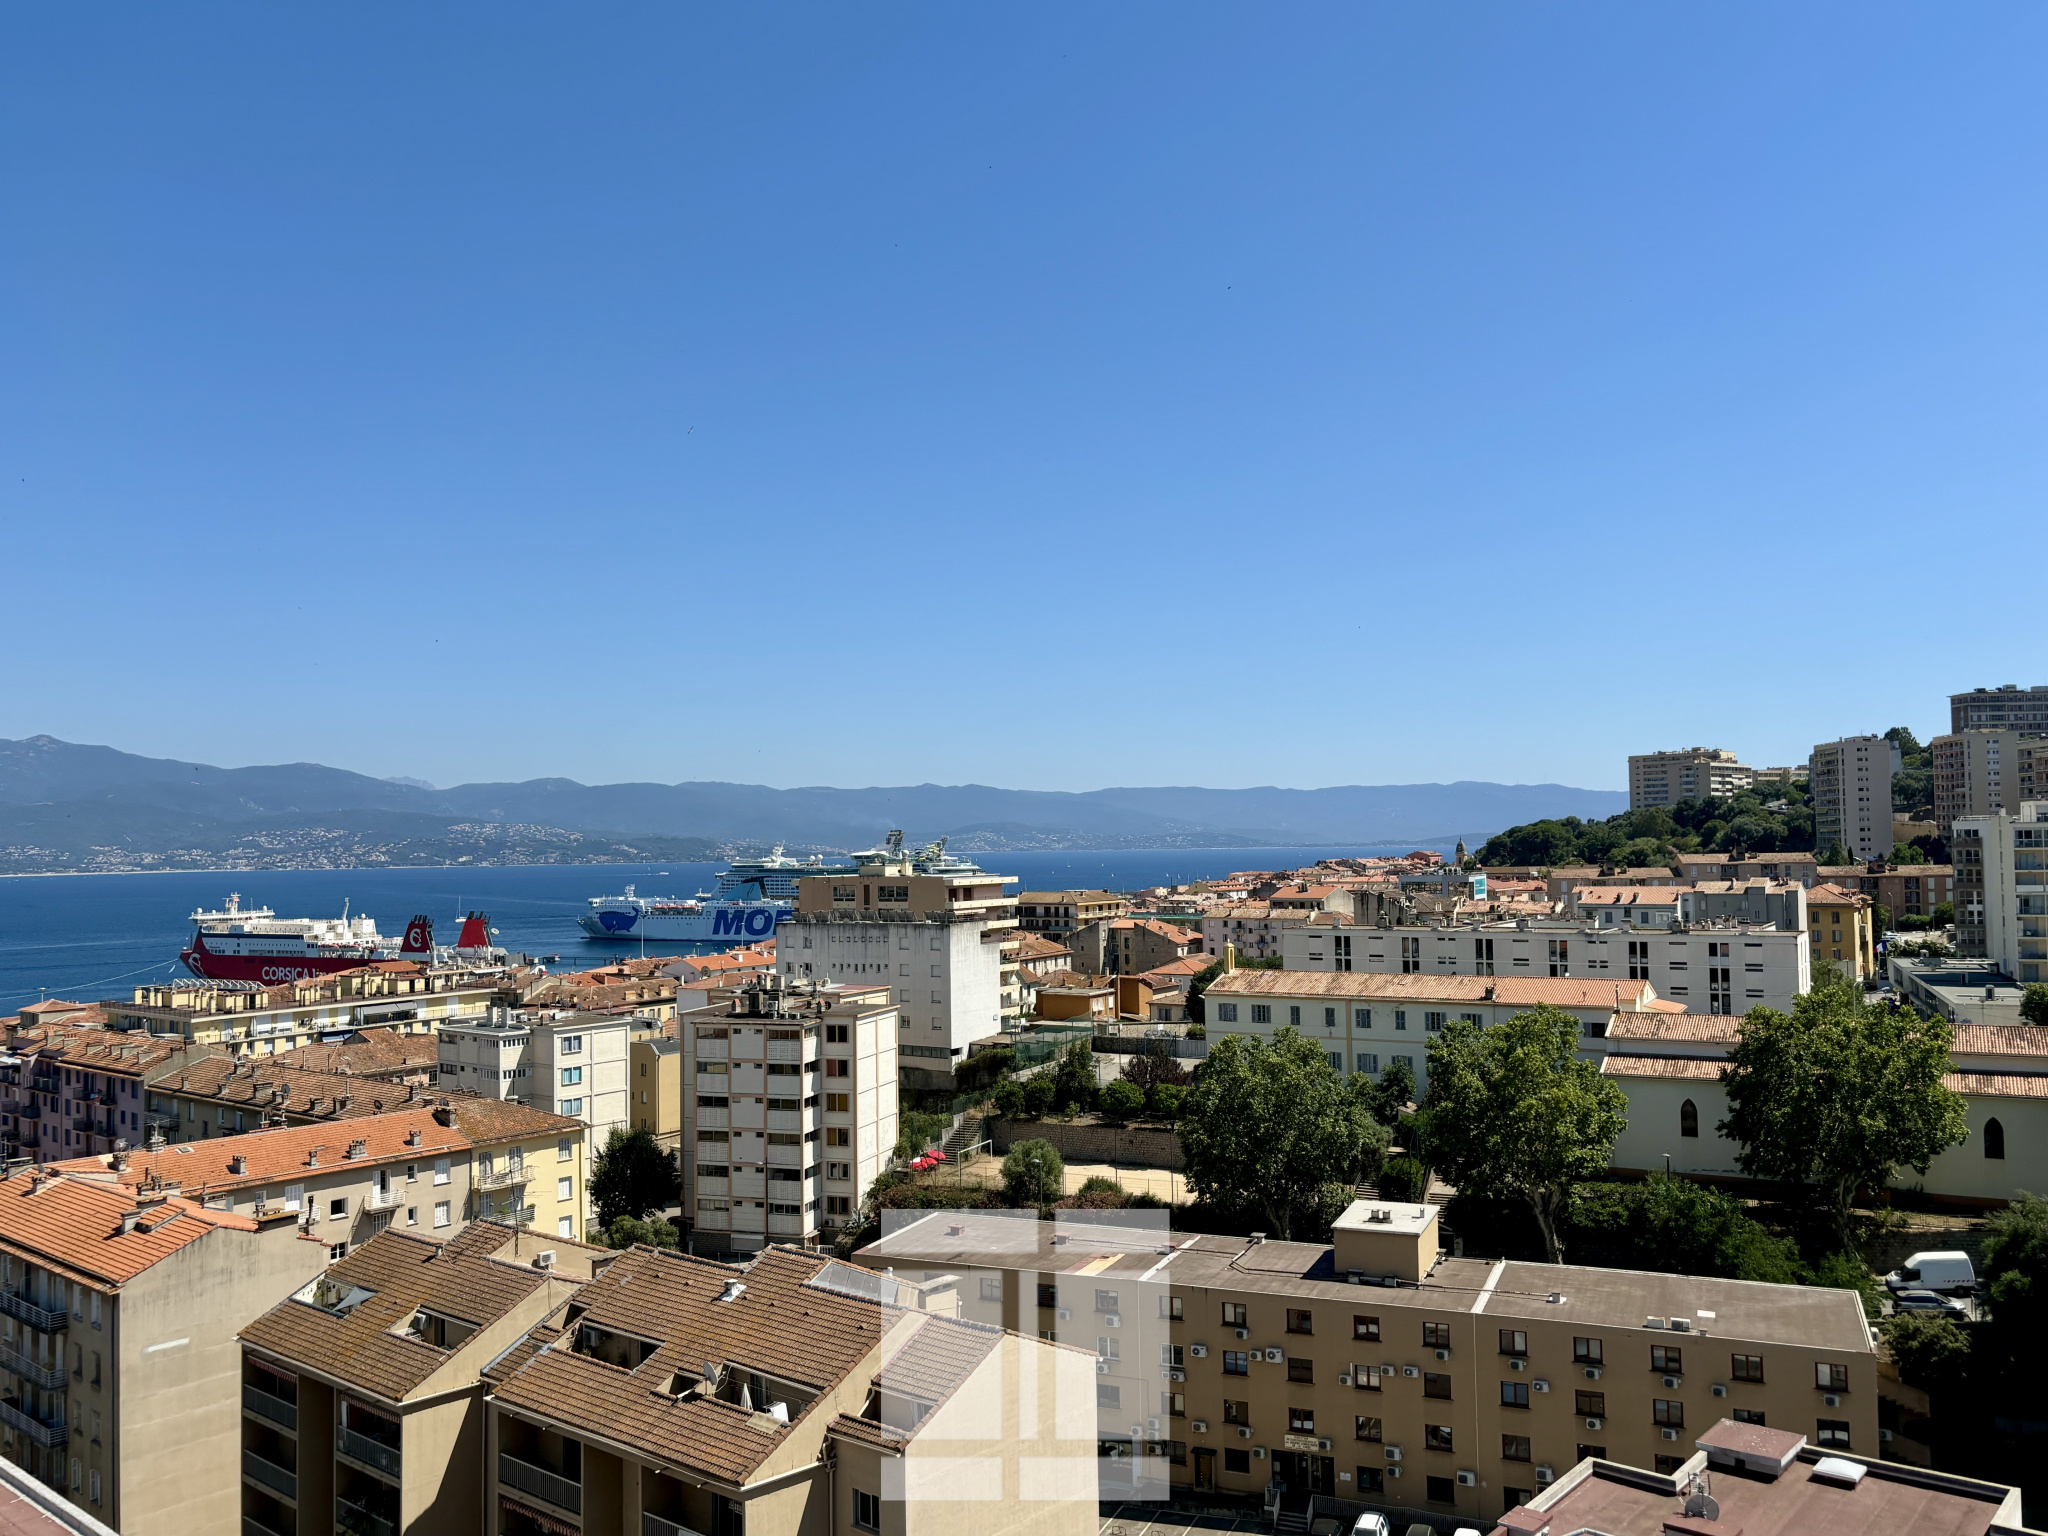 NOUVEAUTE et EXCLUSIVITE agence Immo de Corse, vaste 3 pièces en étage élevé avec vue dégagée sur la ville et